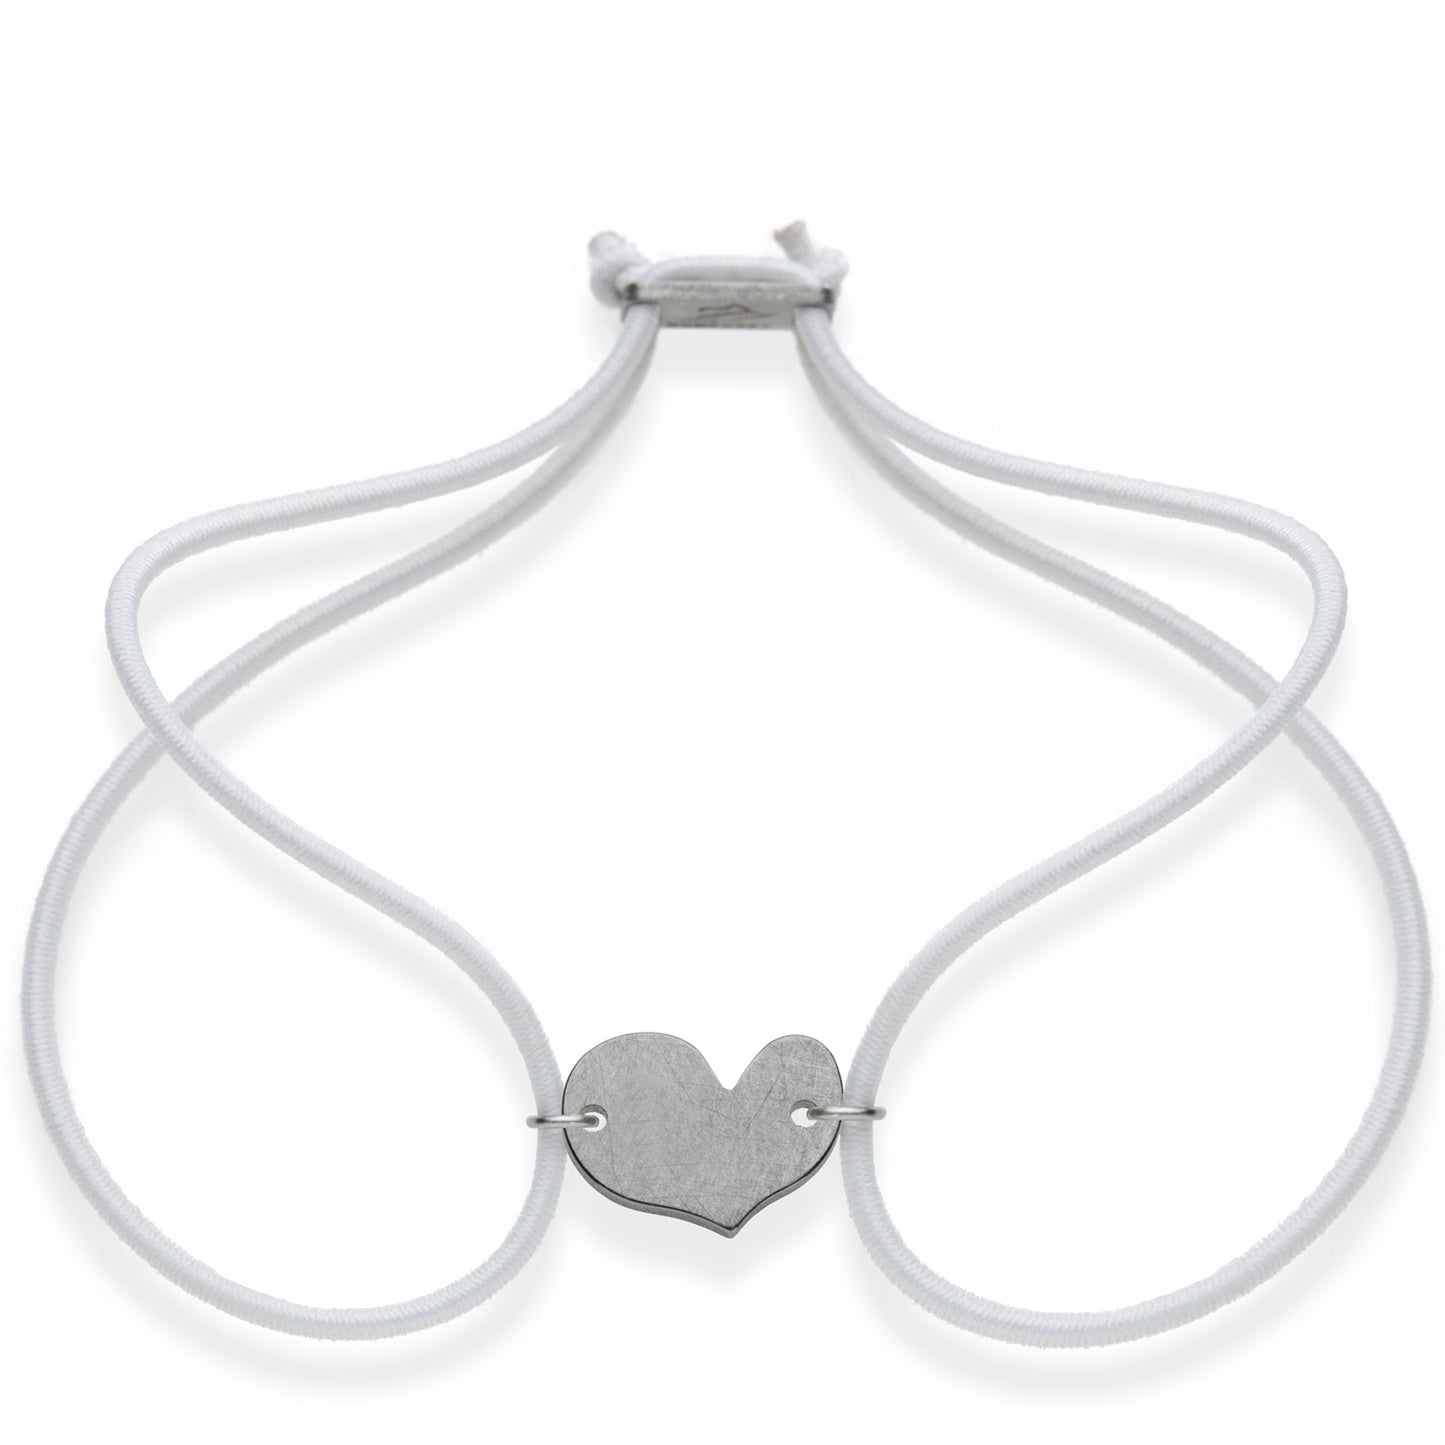 FORTUNA Armband - Herz, Edelstahl, mit elastischem Textilband zum problemlosen an- und ausziehen